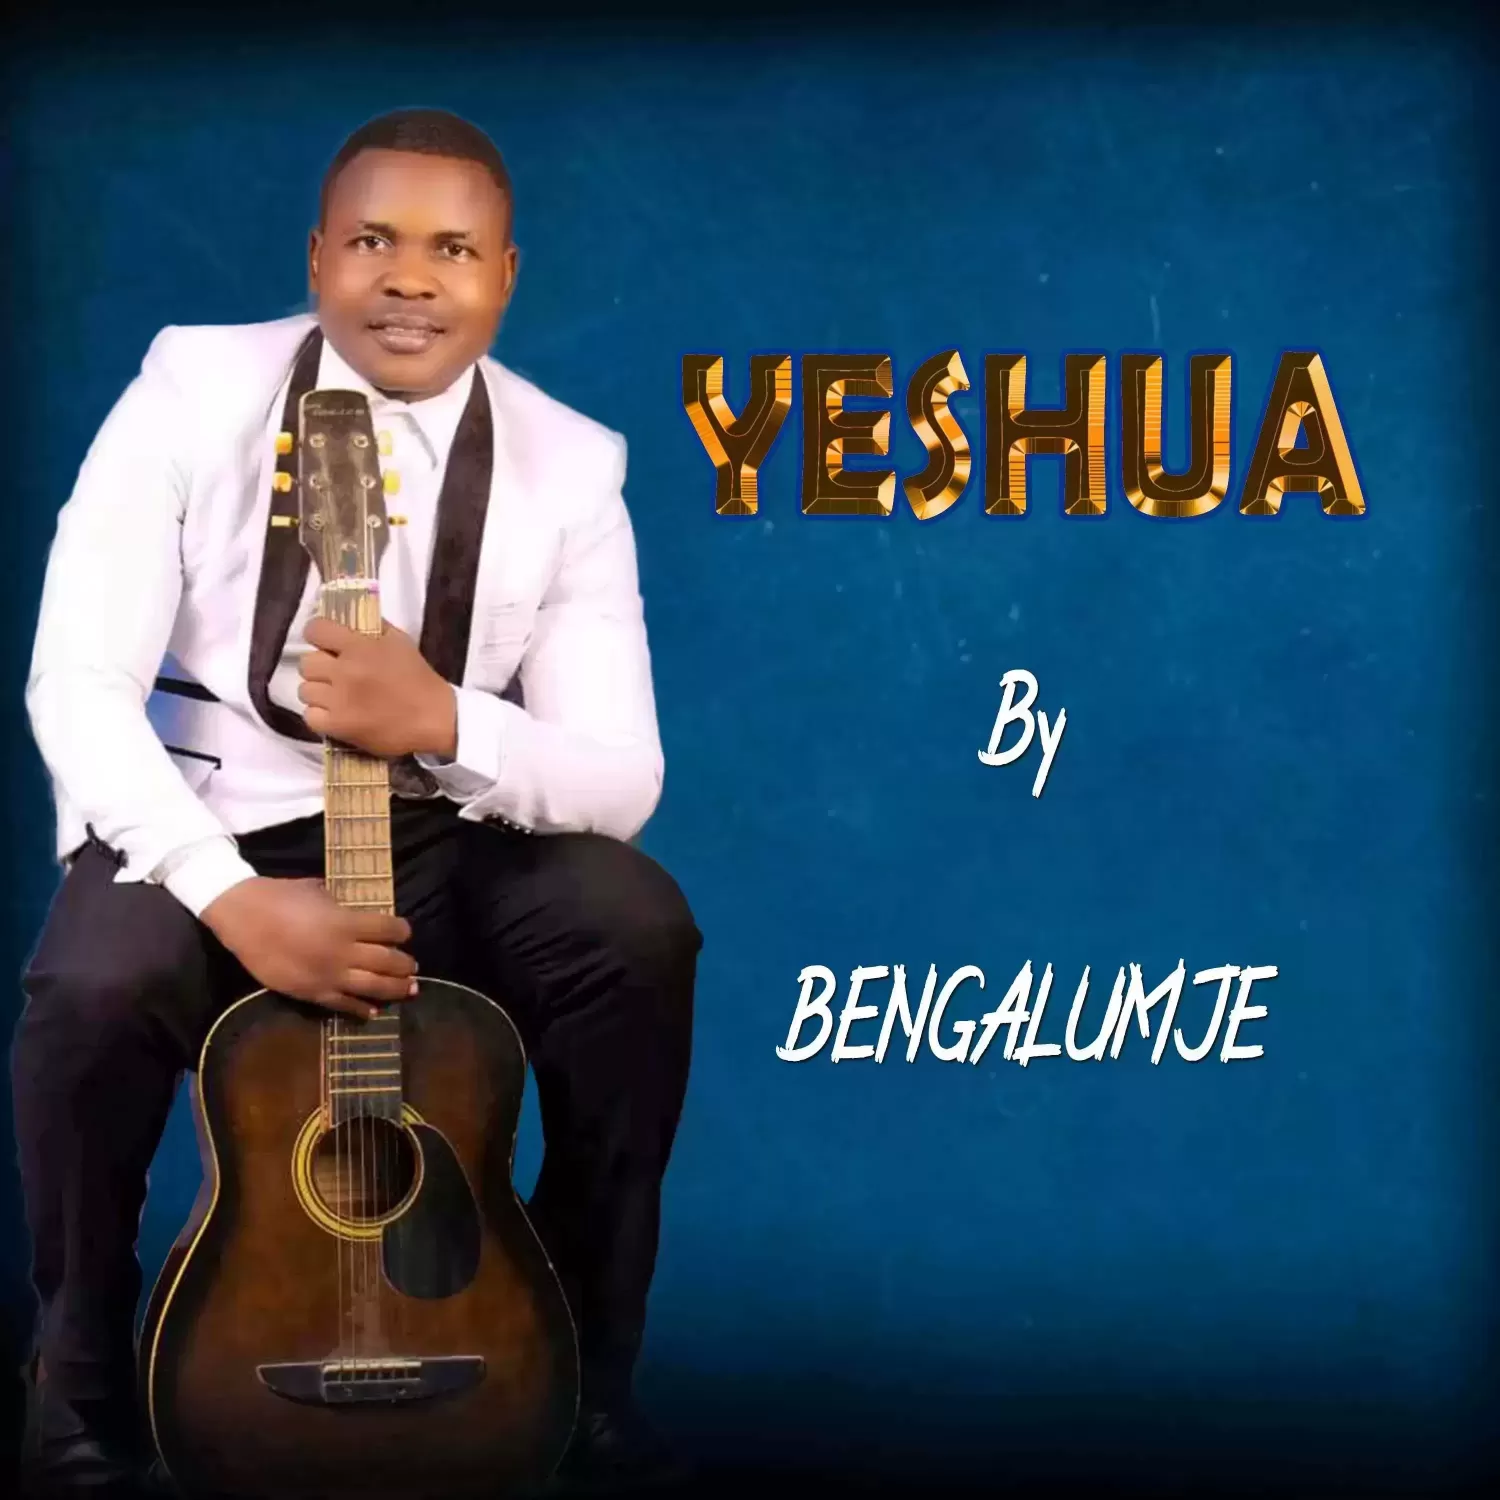 Yeshua by Bengalumje